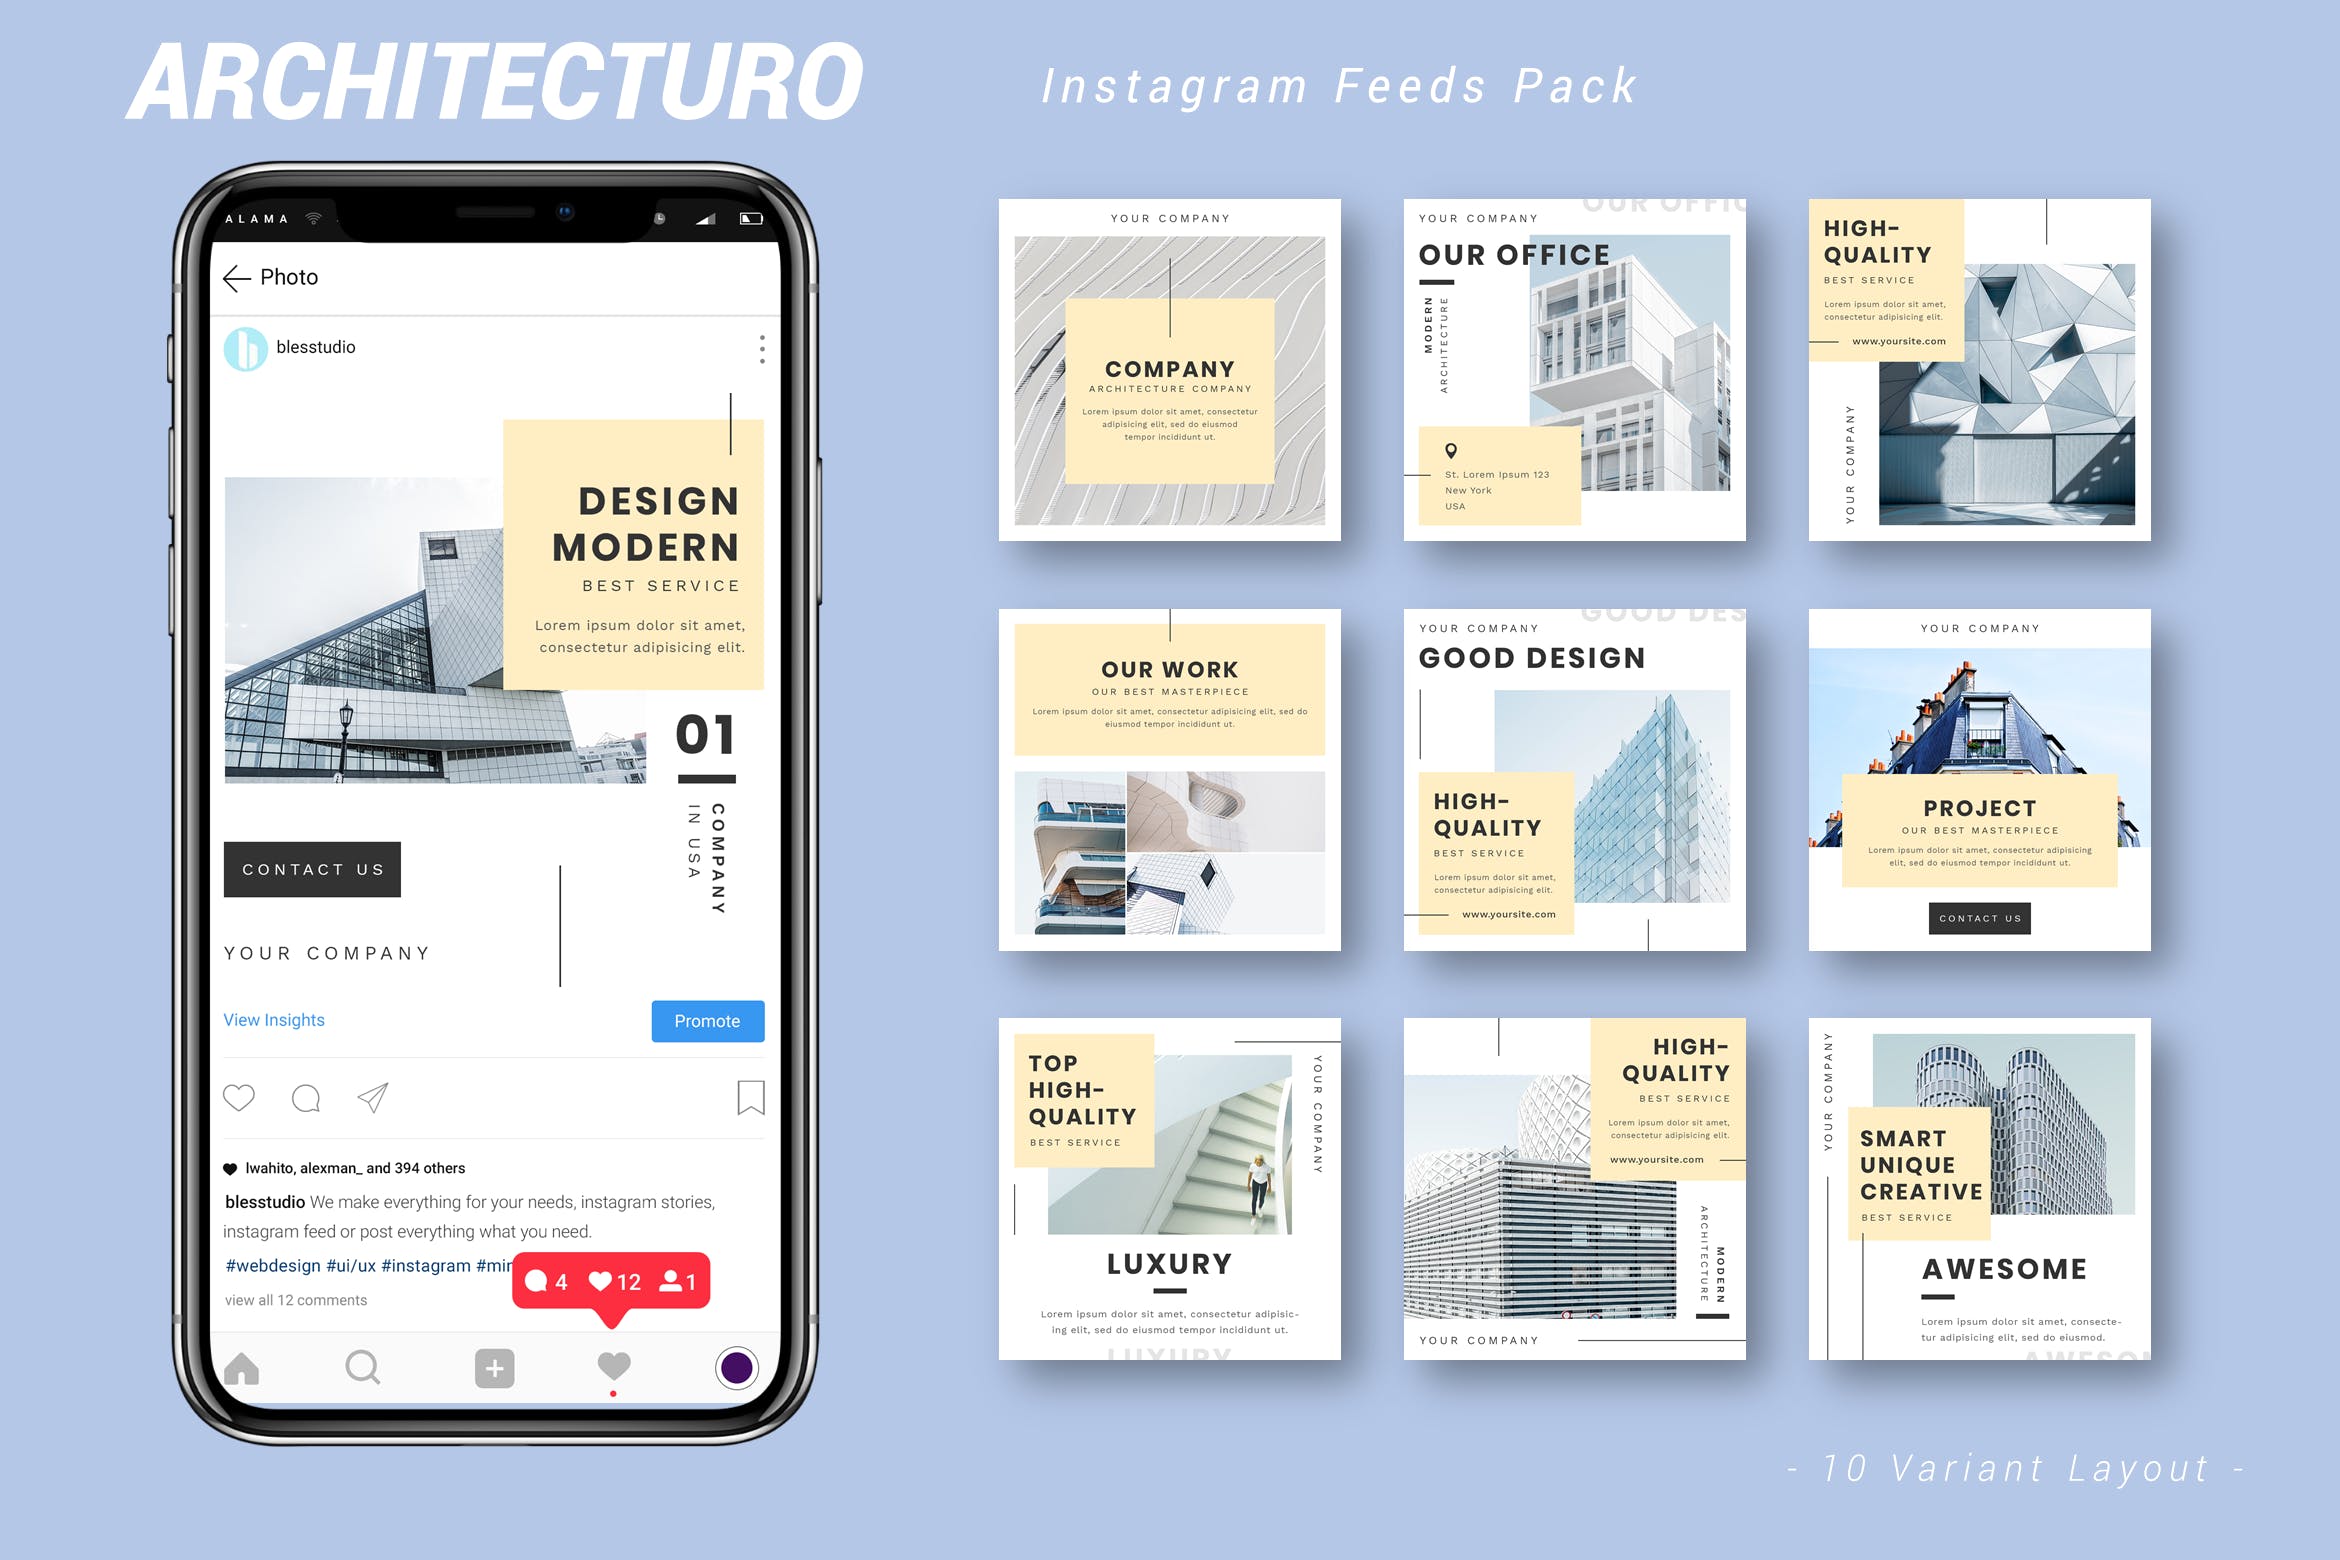 建筑设计品牌社交信息流推广设计素材包 Architecturo – Instagram Feeds Pack插图